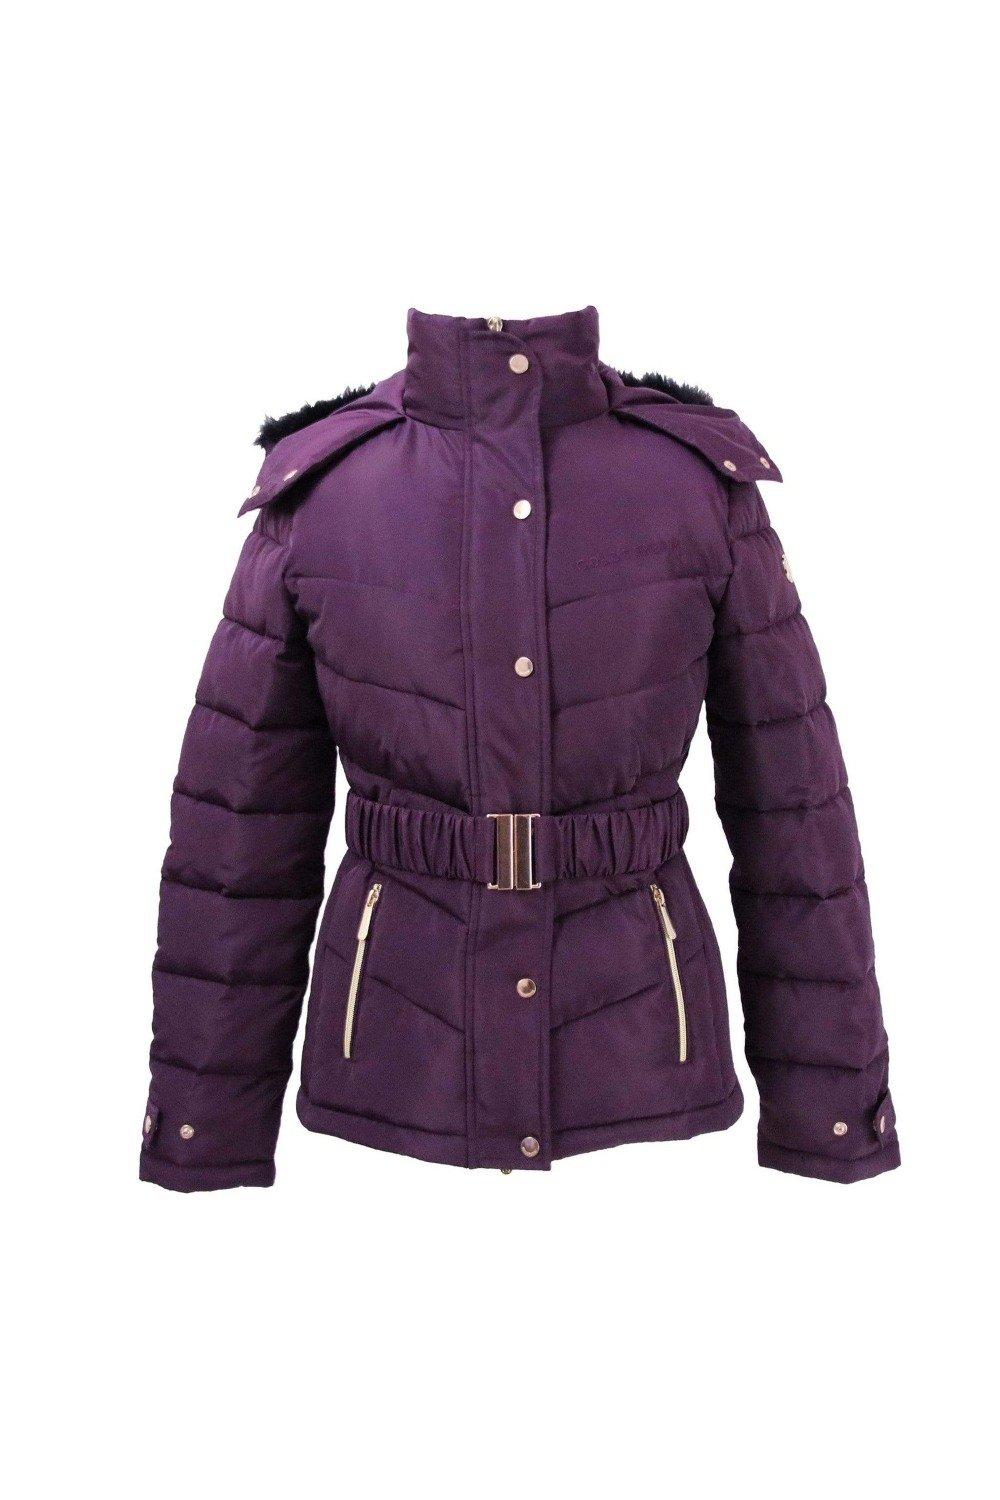 Стеганое пальто Cornhill Coldstream, фиолетовый